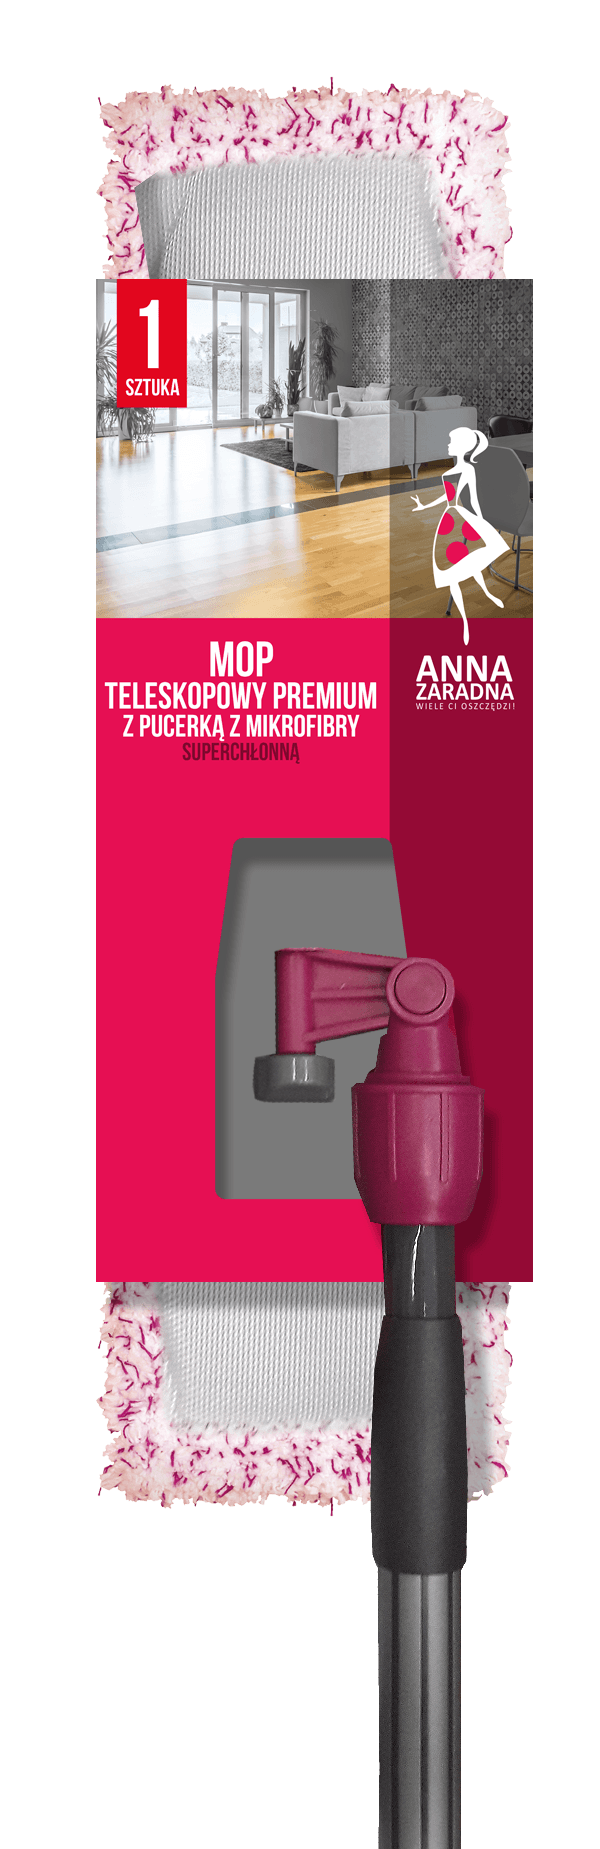 AZ Mop teleskopowy PREMIUM z pucerką z mikrofibry SUPERCHŁONNĄ Anna Zaradna